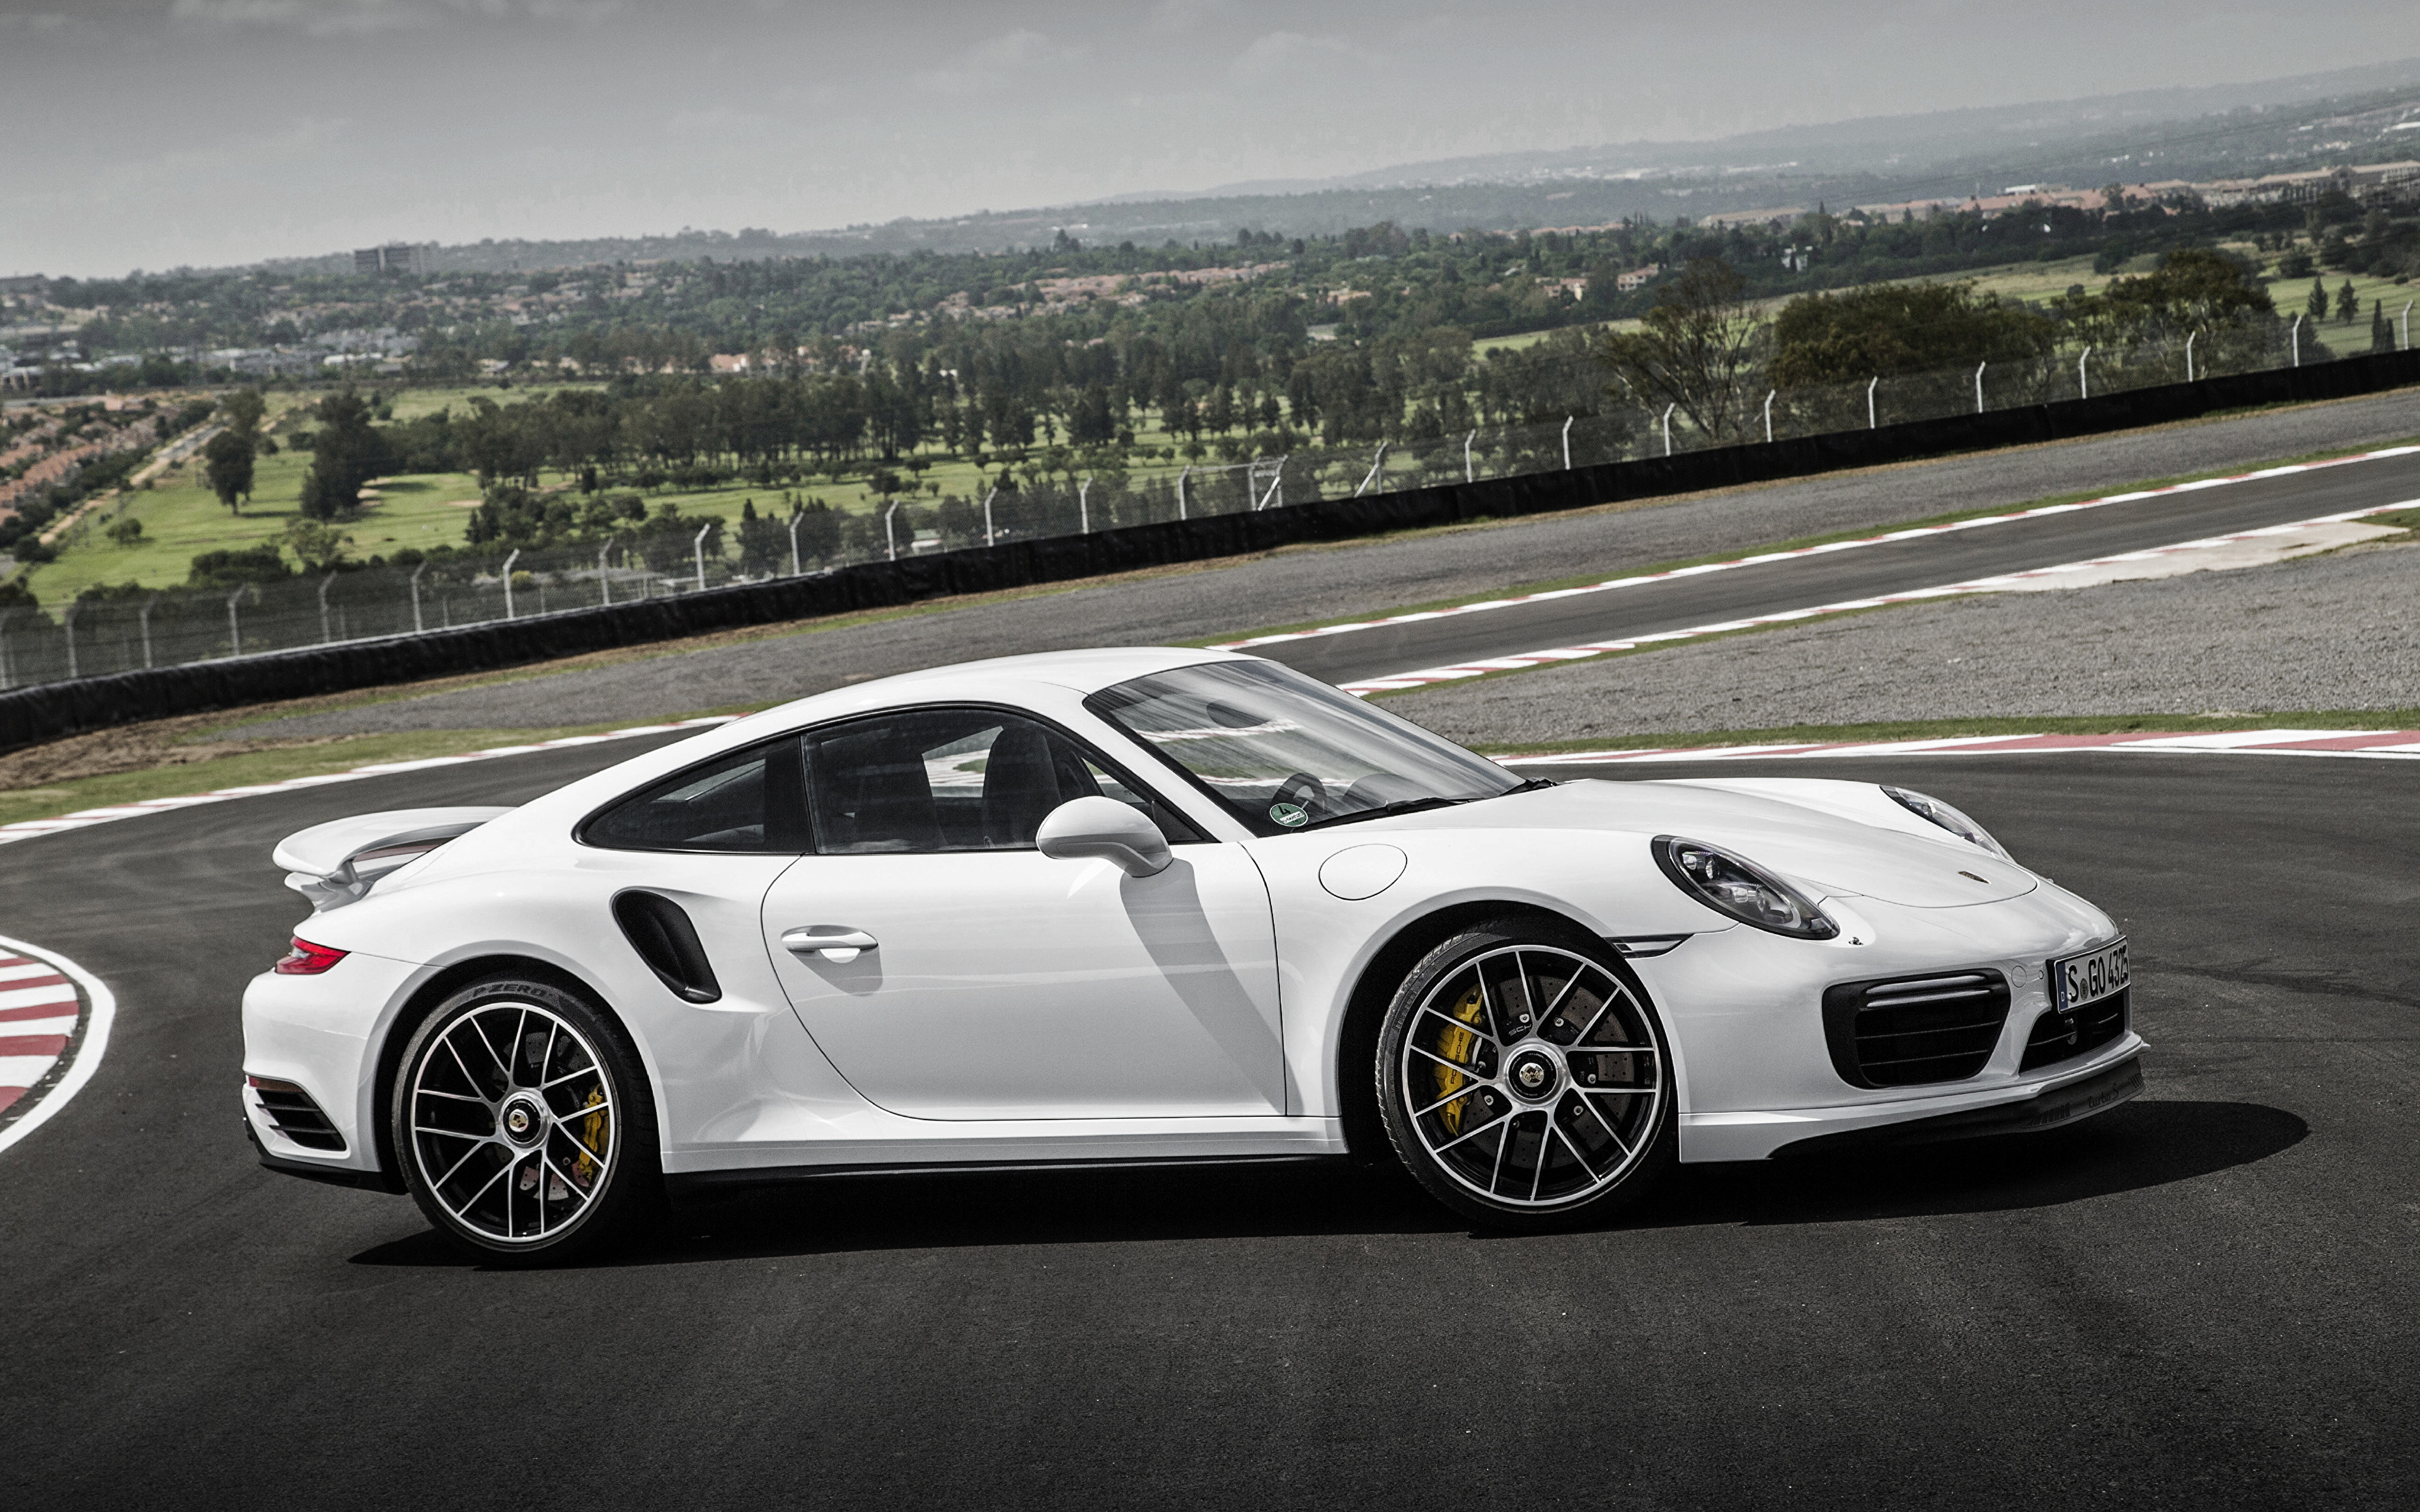 Порше спорткар. Порше 911 турбо s. Porsche 911 Turbo s 2016. Porsche 911 турбо s белый. Спорткар Порше 911.